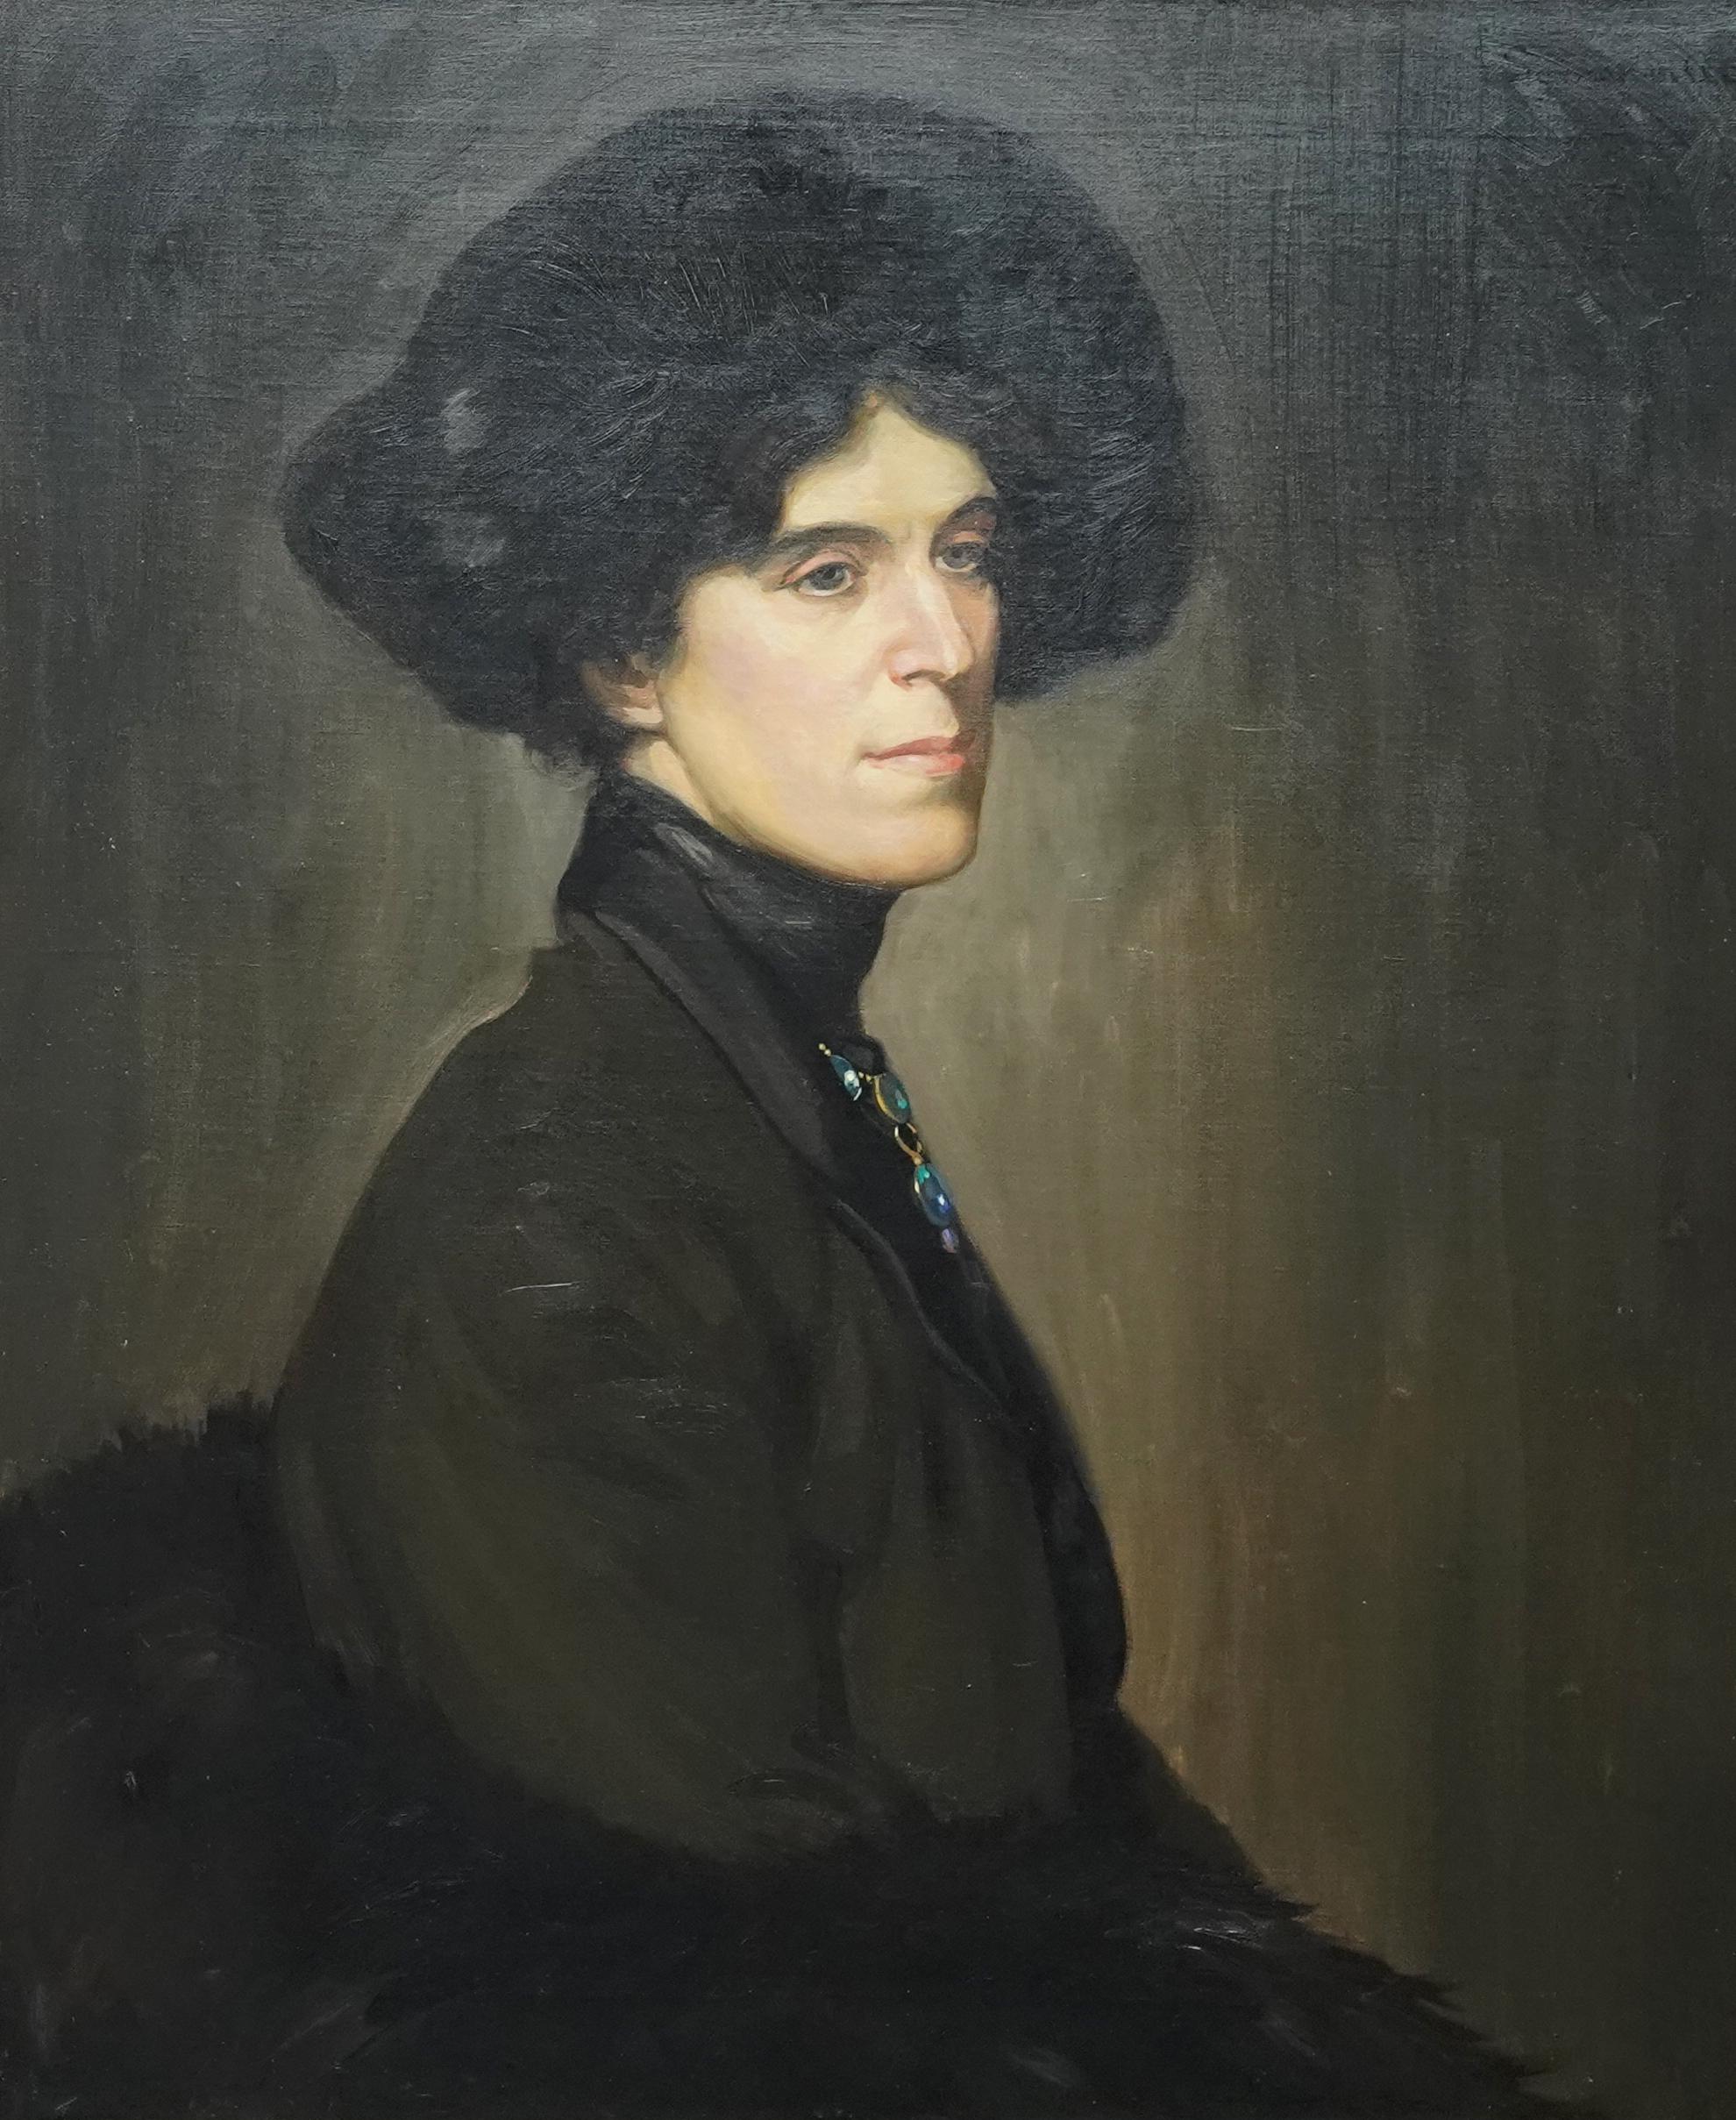 Porträt von Blanche Stuchbury – schottisches edwardianisches Porträt-Ölgemälde – Painting von Howard Somerville